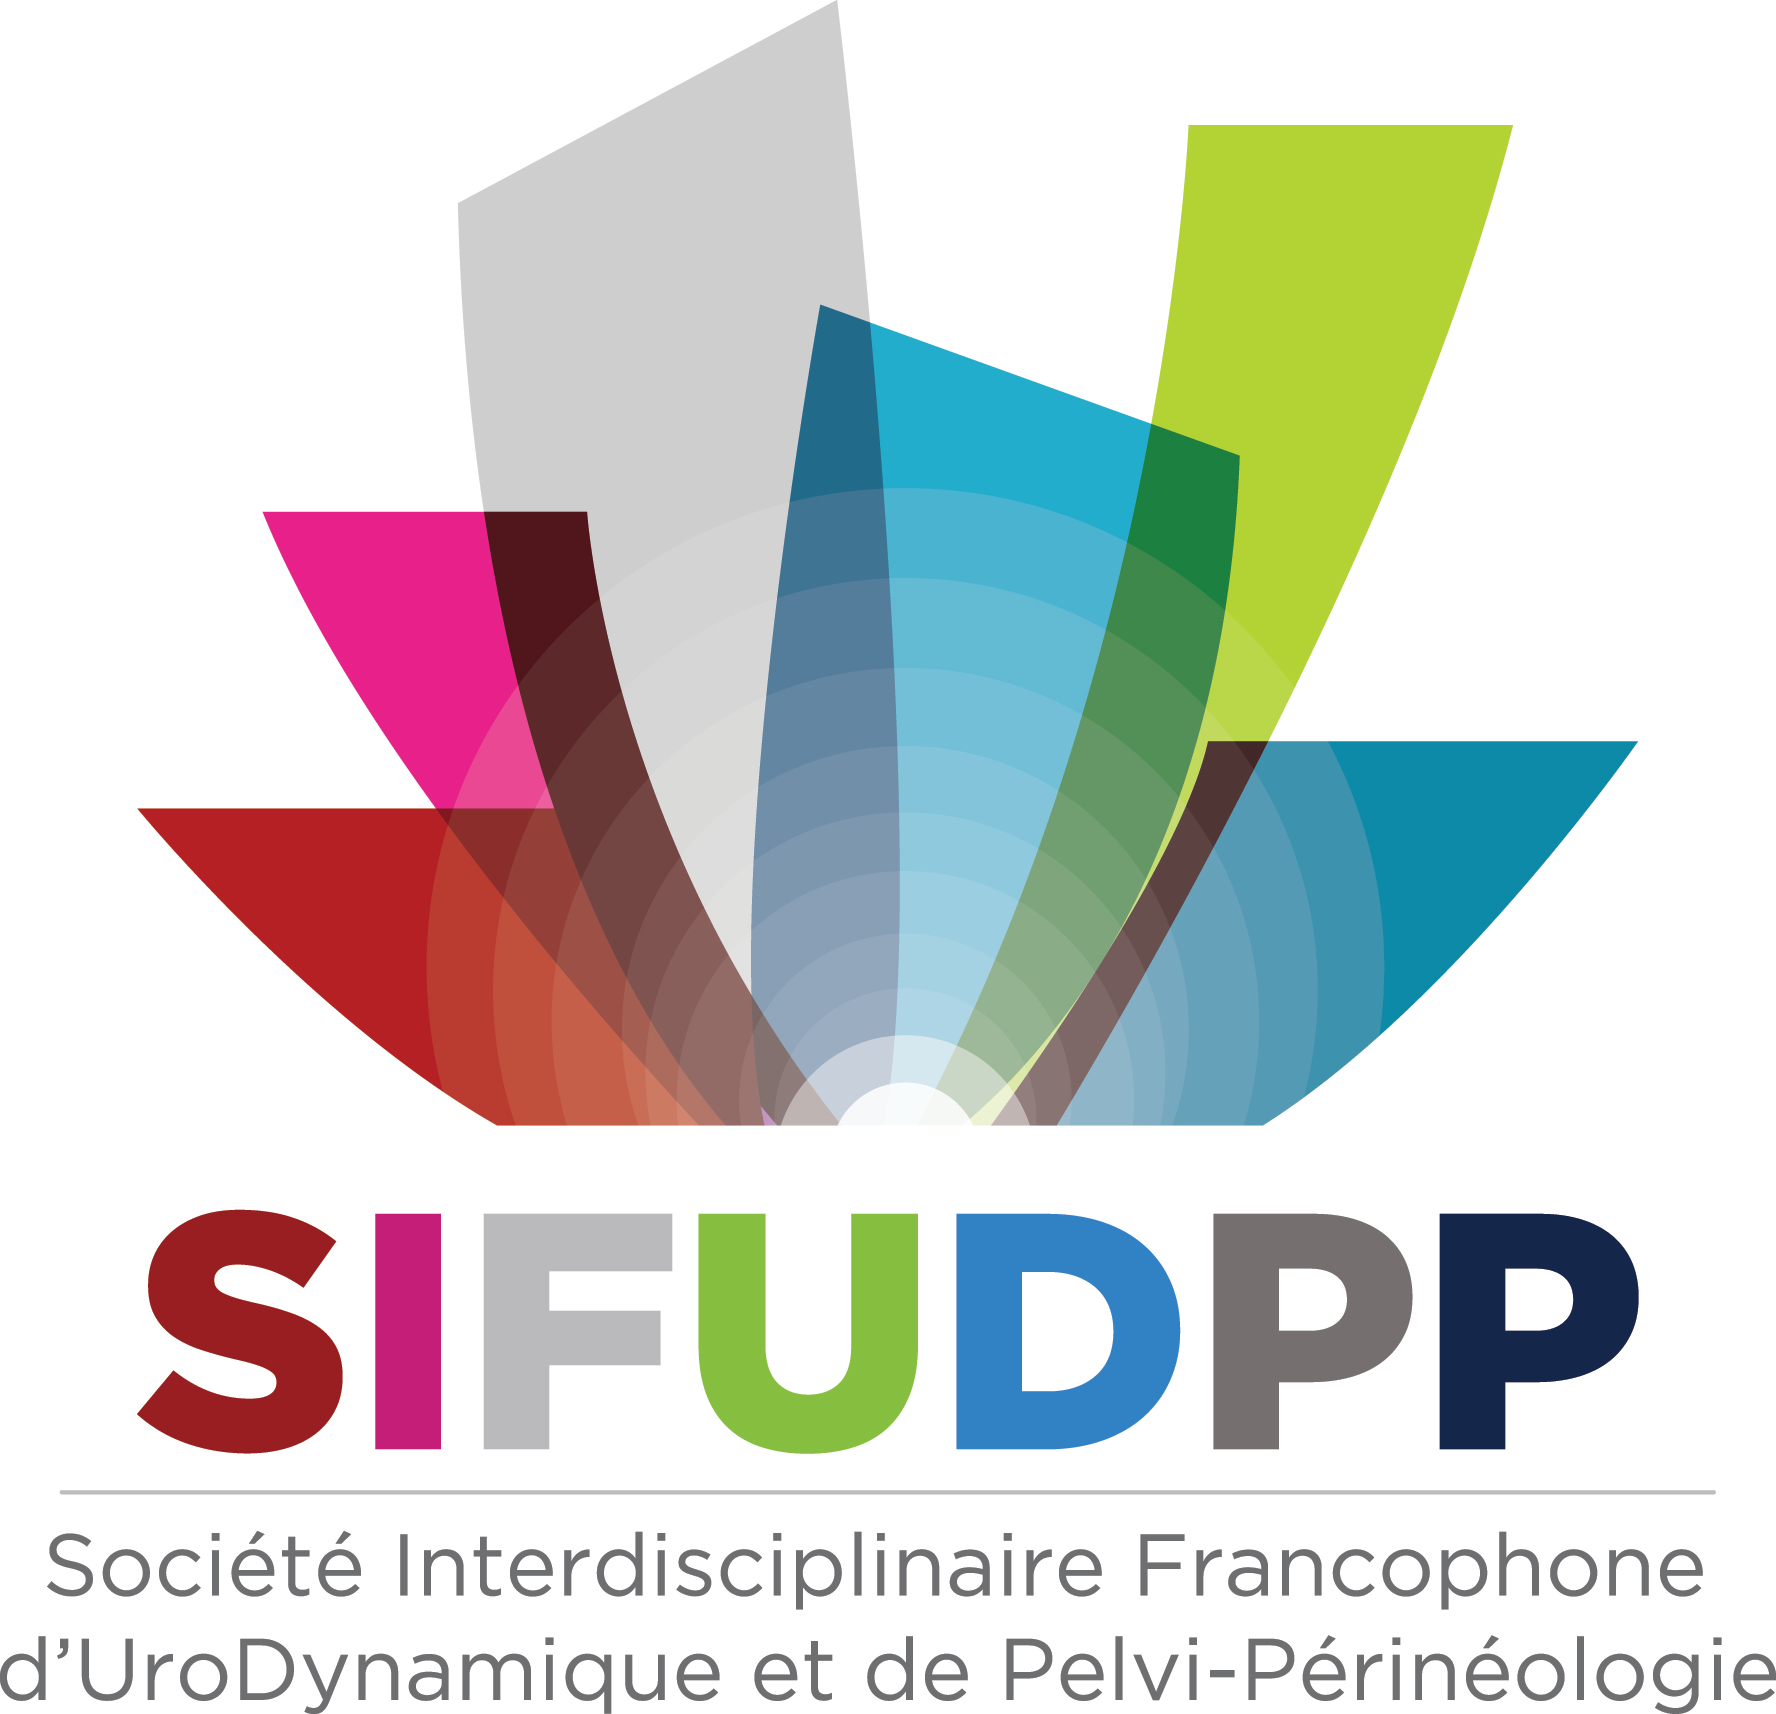 SIFUD-PP Paris 2016 : Chirurgie de l’obstruction sous-vésicale de l’homme et pathologie neurologique (syndromes parkinsoniens, A.V.C.)